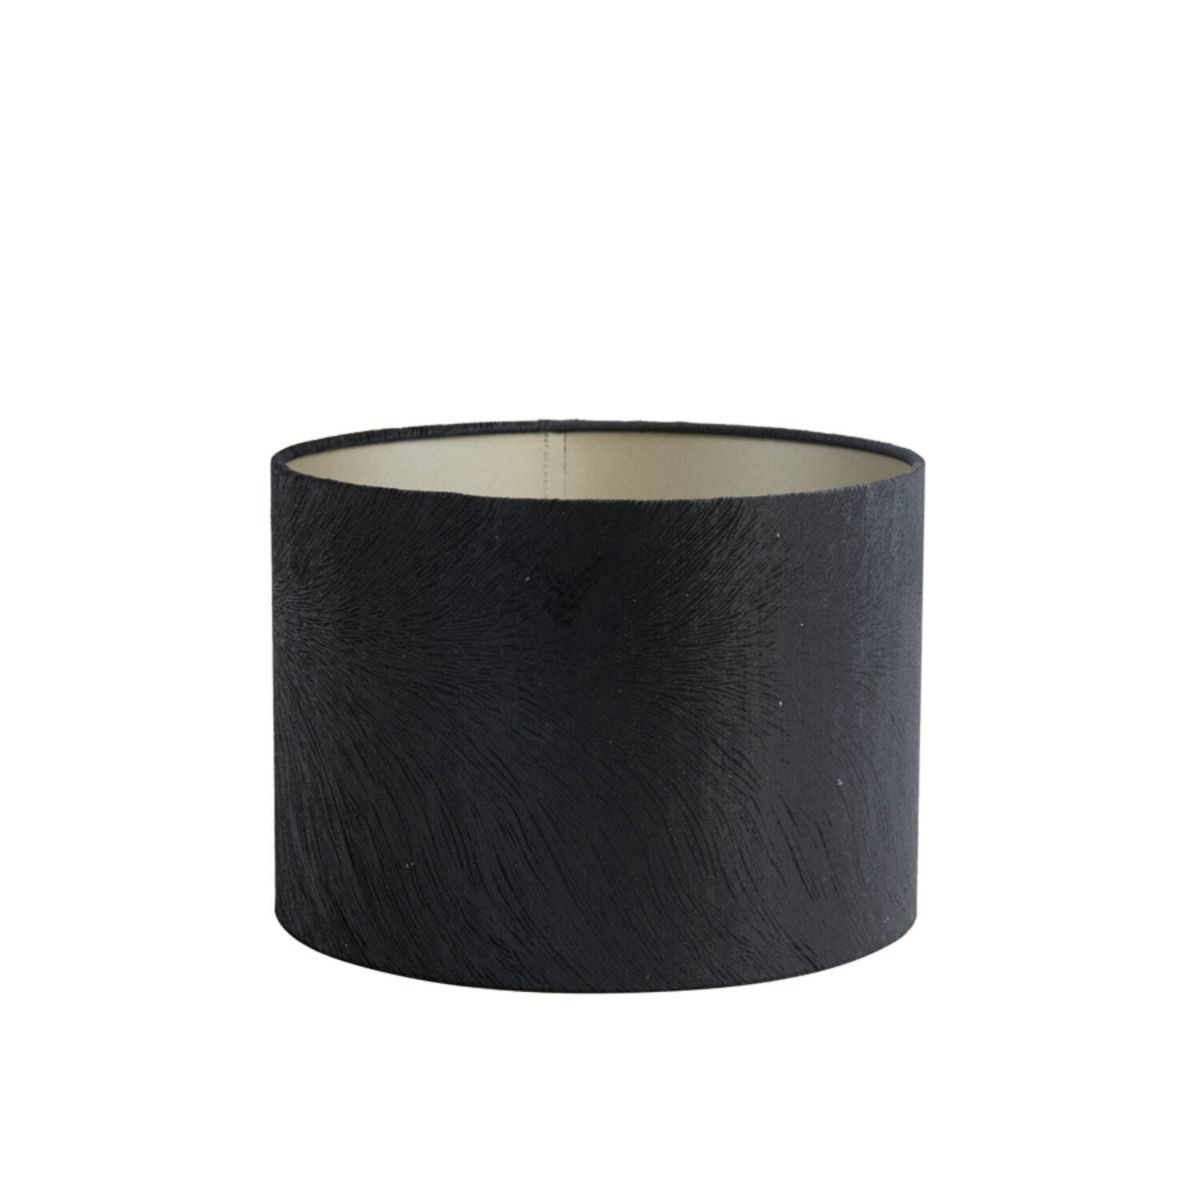 Kap cilinder 40-40-30 cm lubis zwart